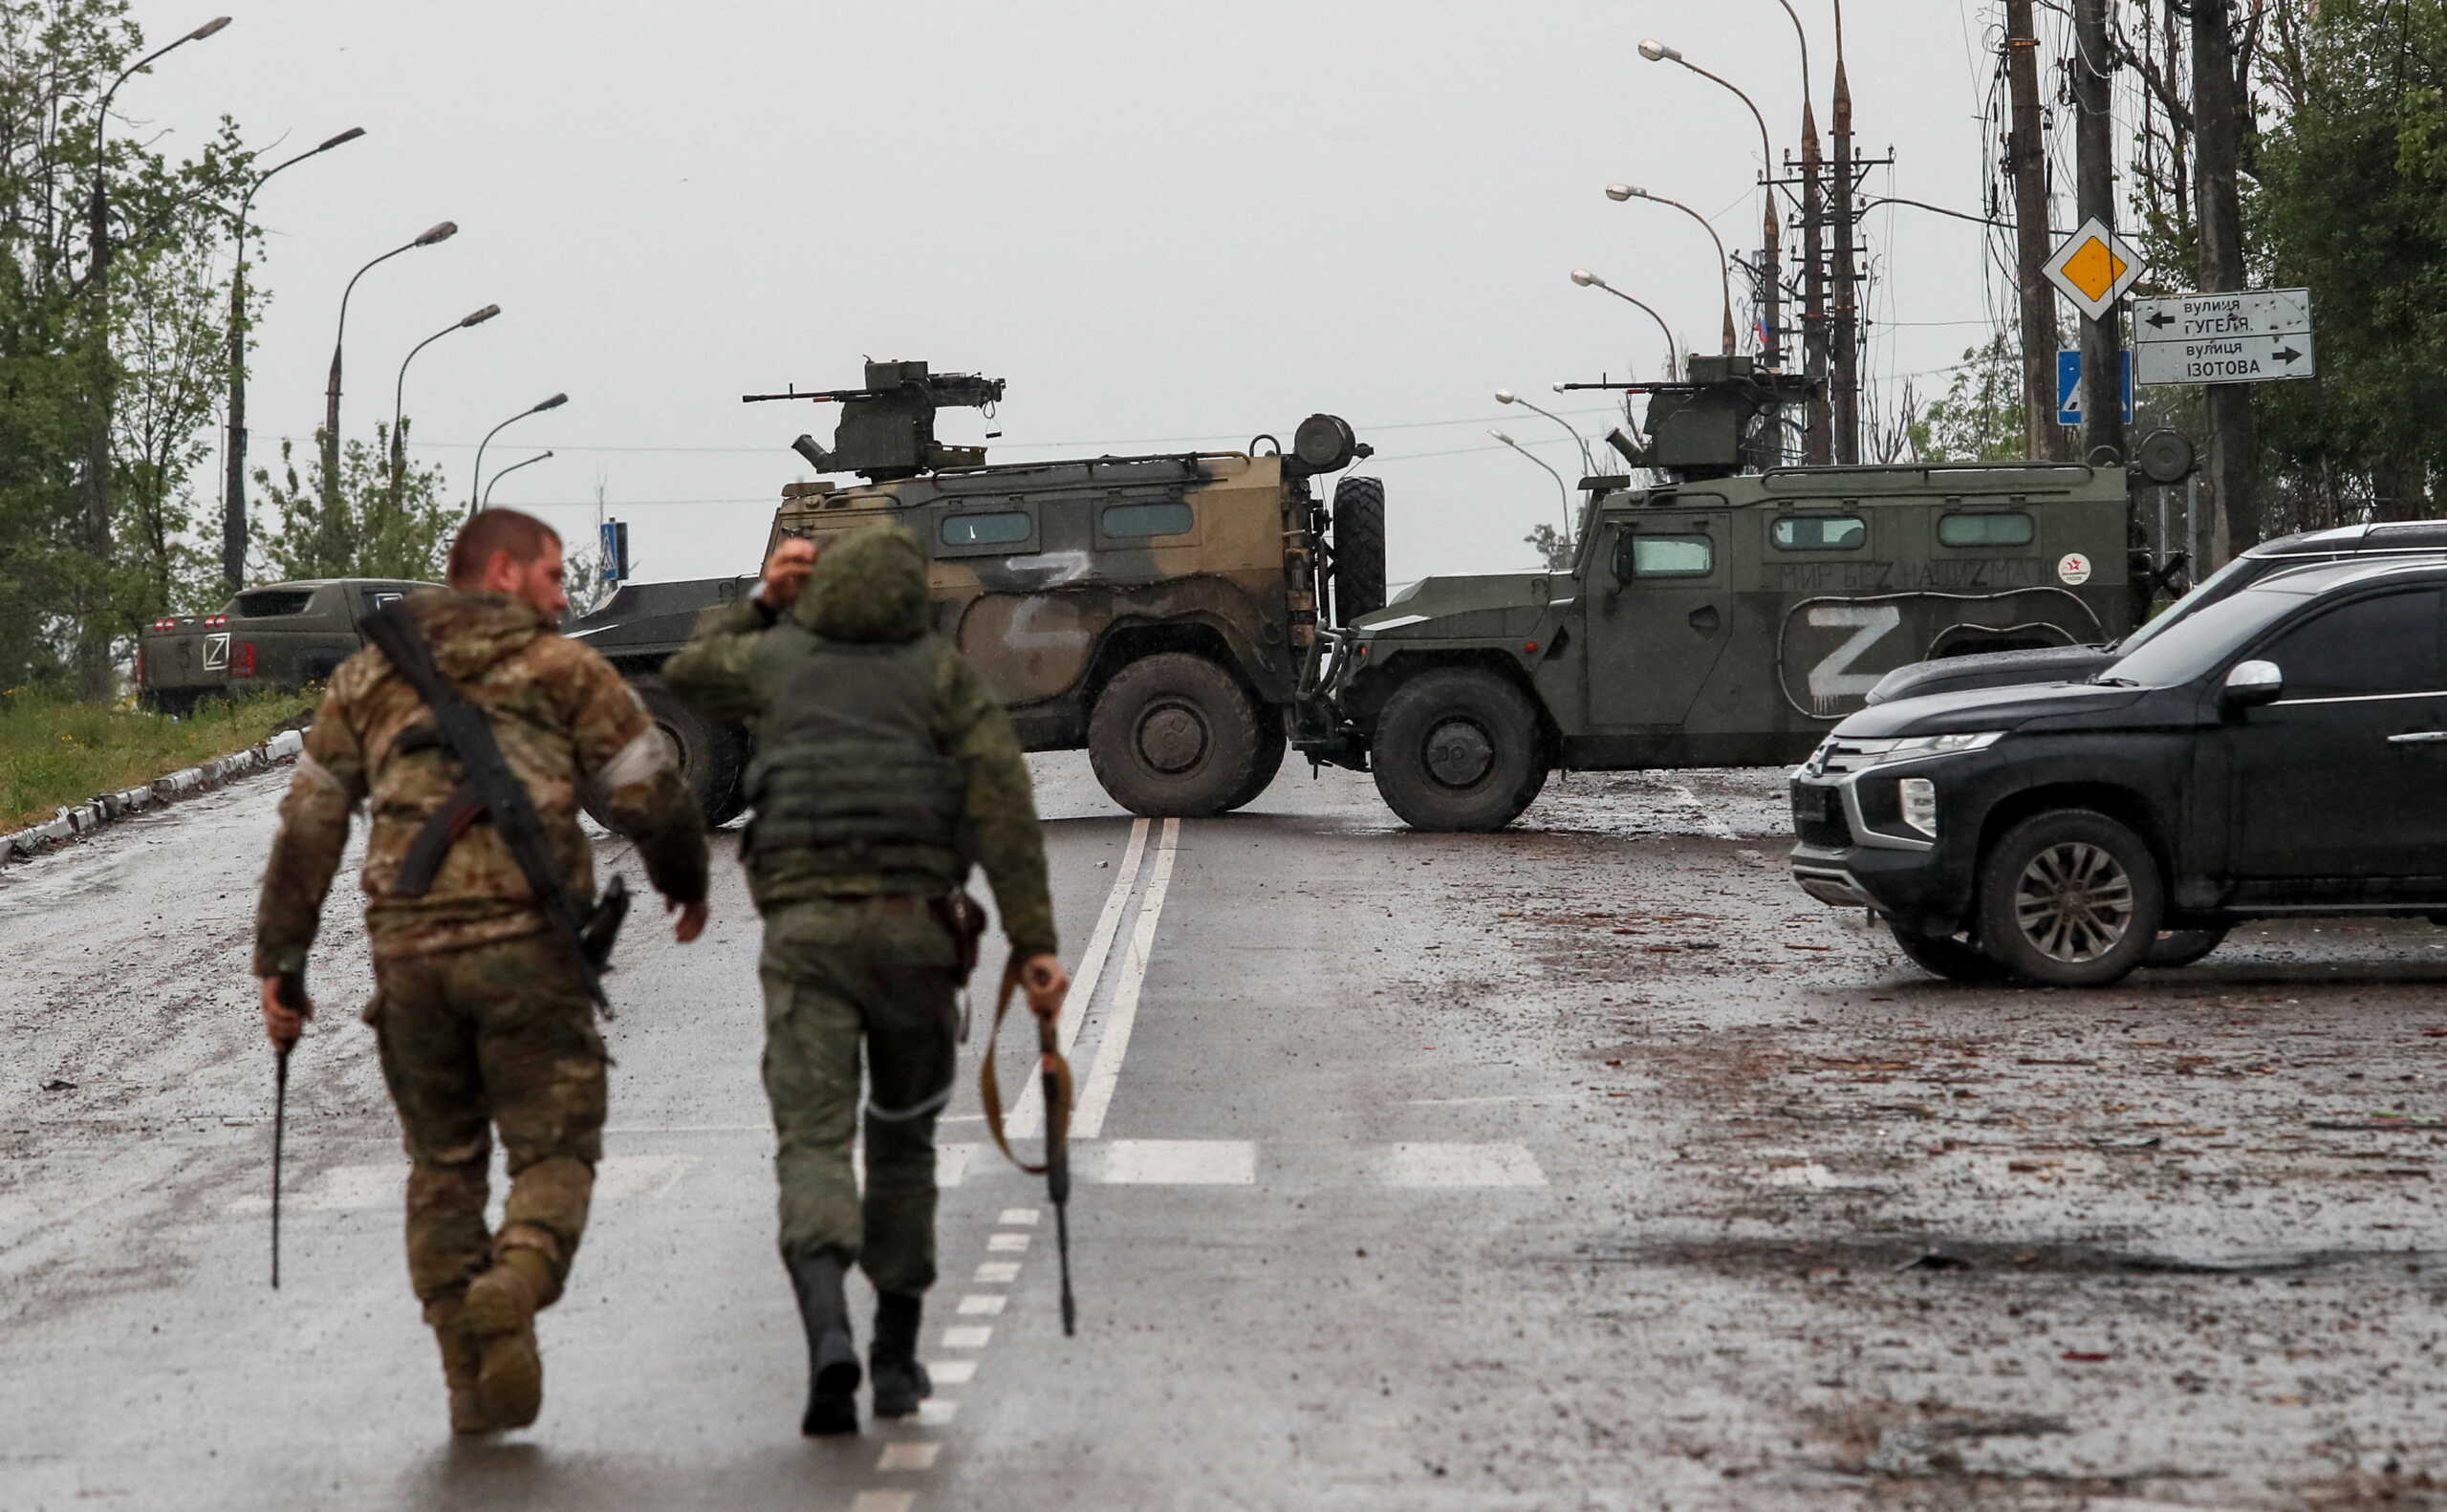 Πόλεμος στην Ουκρανία – Σοϊγκού: Η Ρωσία επιβραδύνει επίτηδες την επίθεση για απομακρύνονται οι άμαχοι